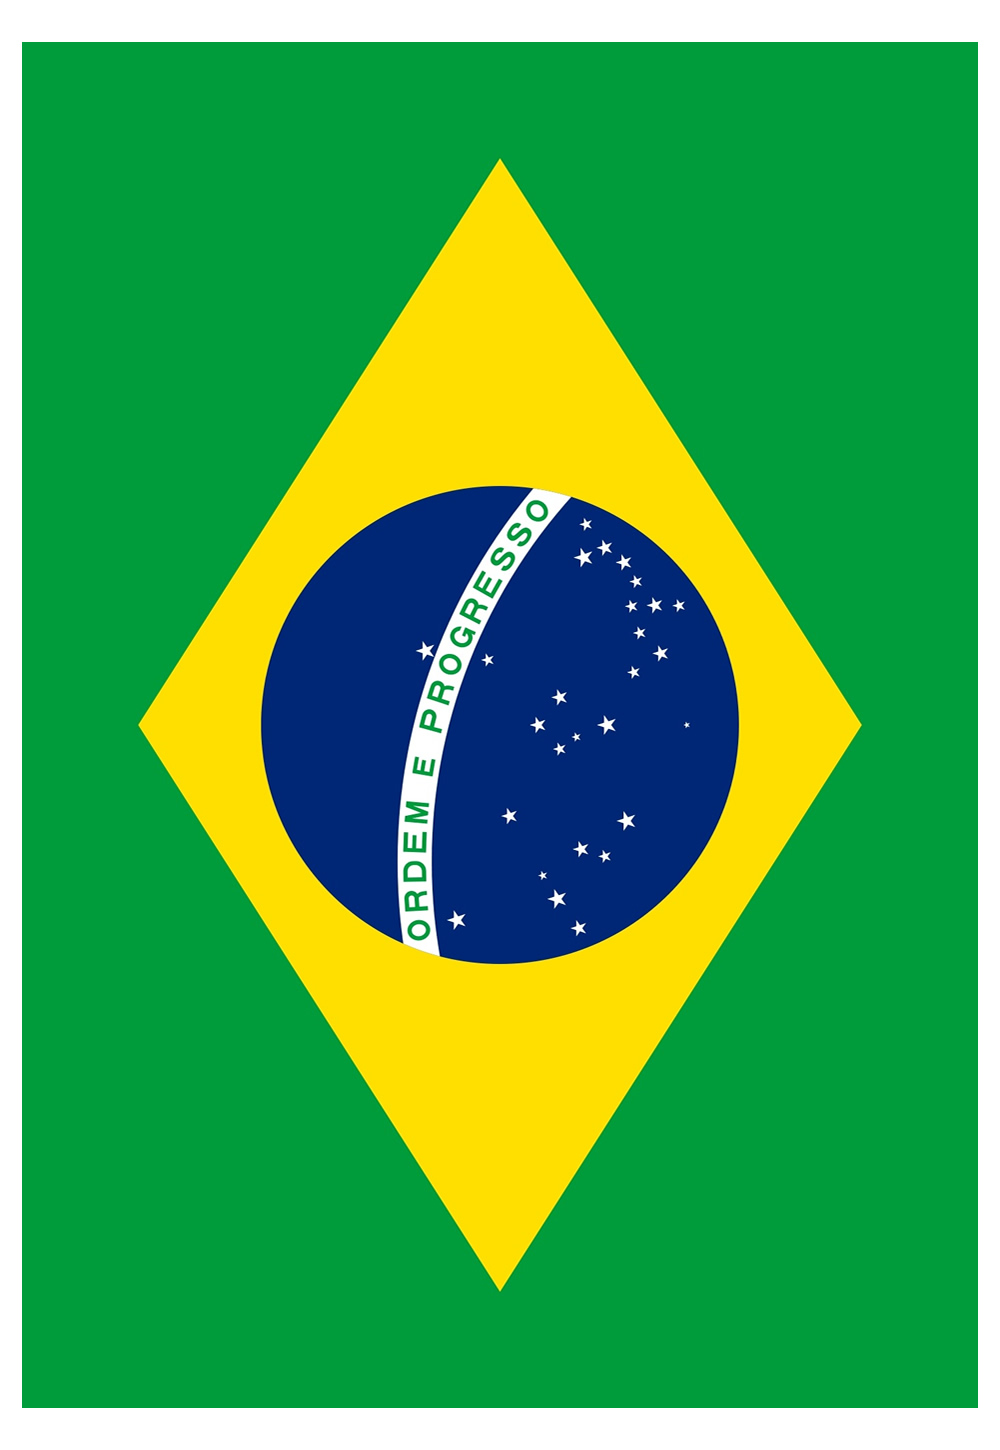 Bandeira do Brasil para imprimir e colorir tamanho A4 - Artesanato